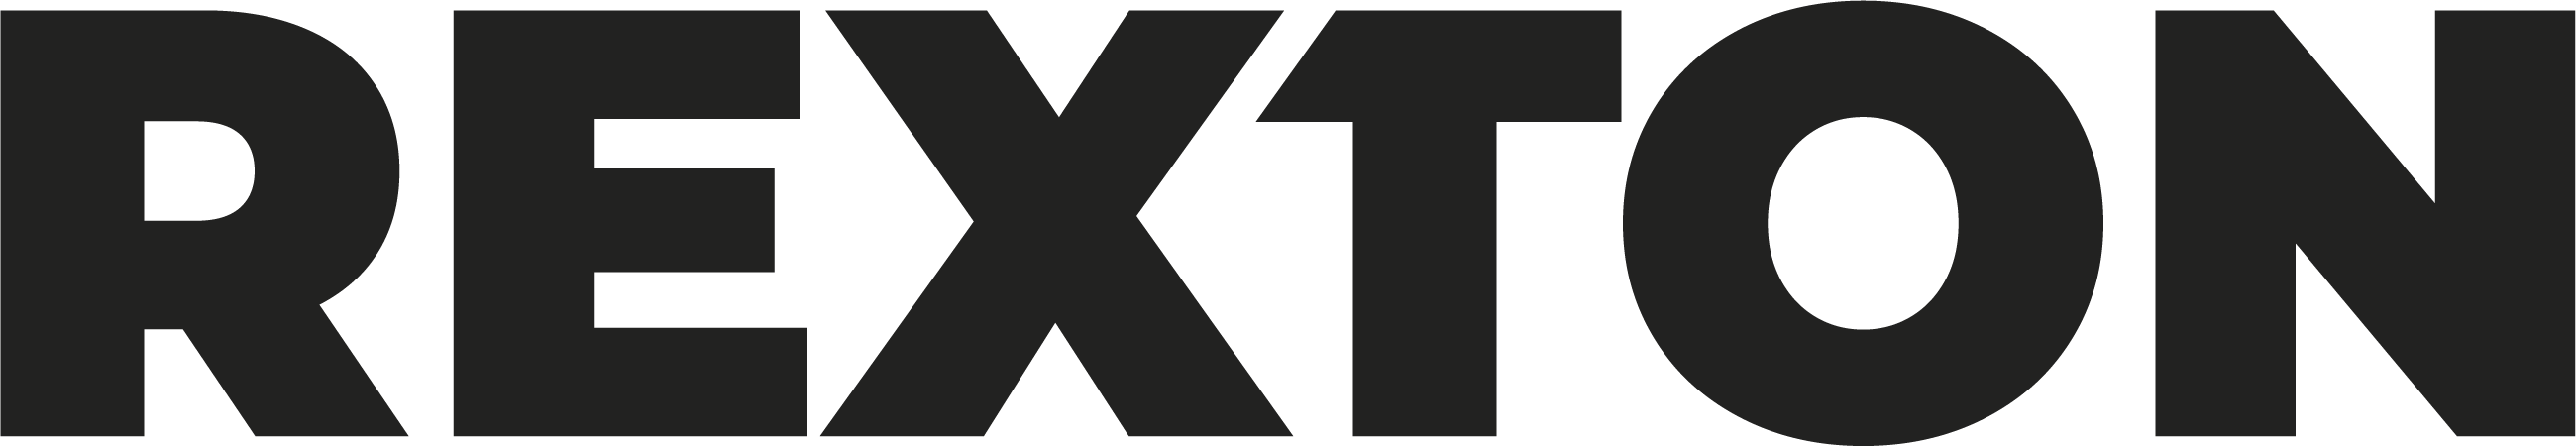 logo : REXTON